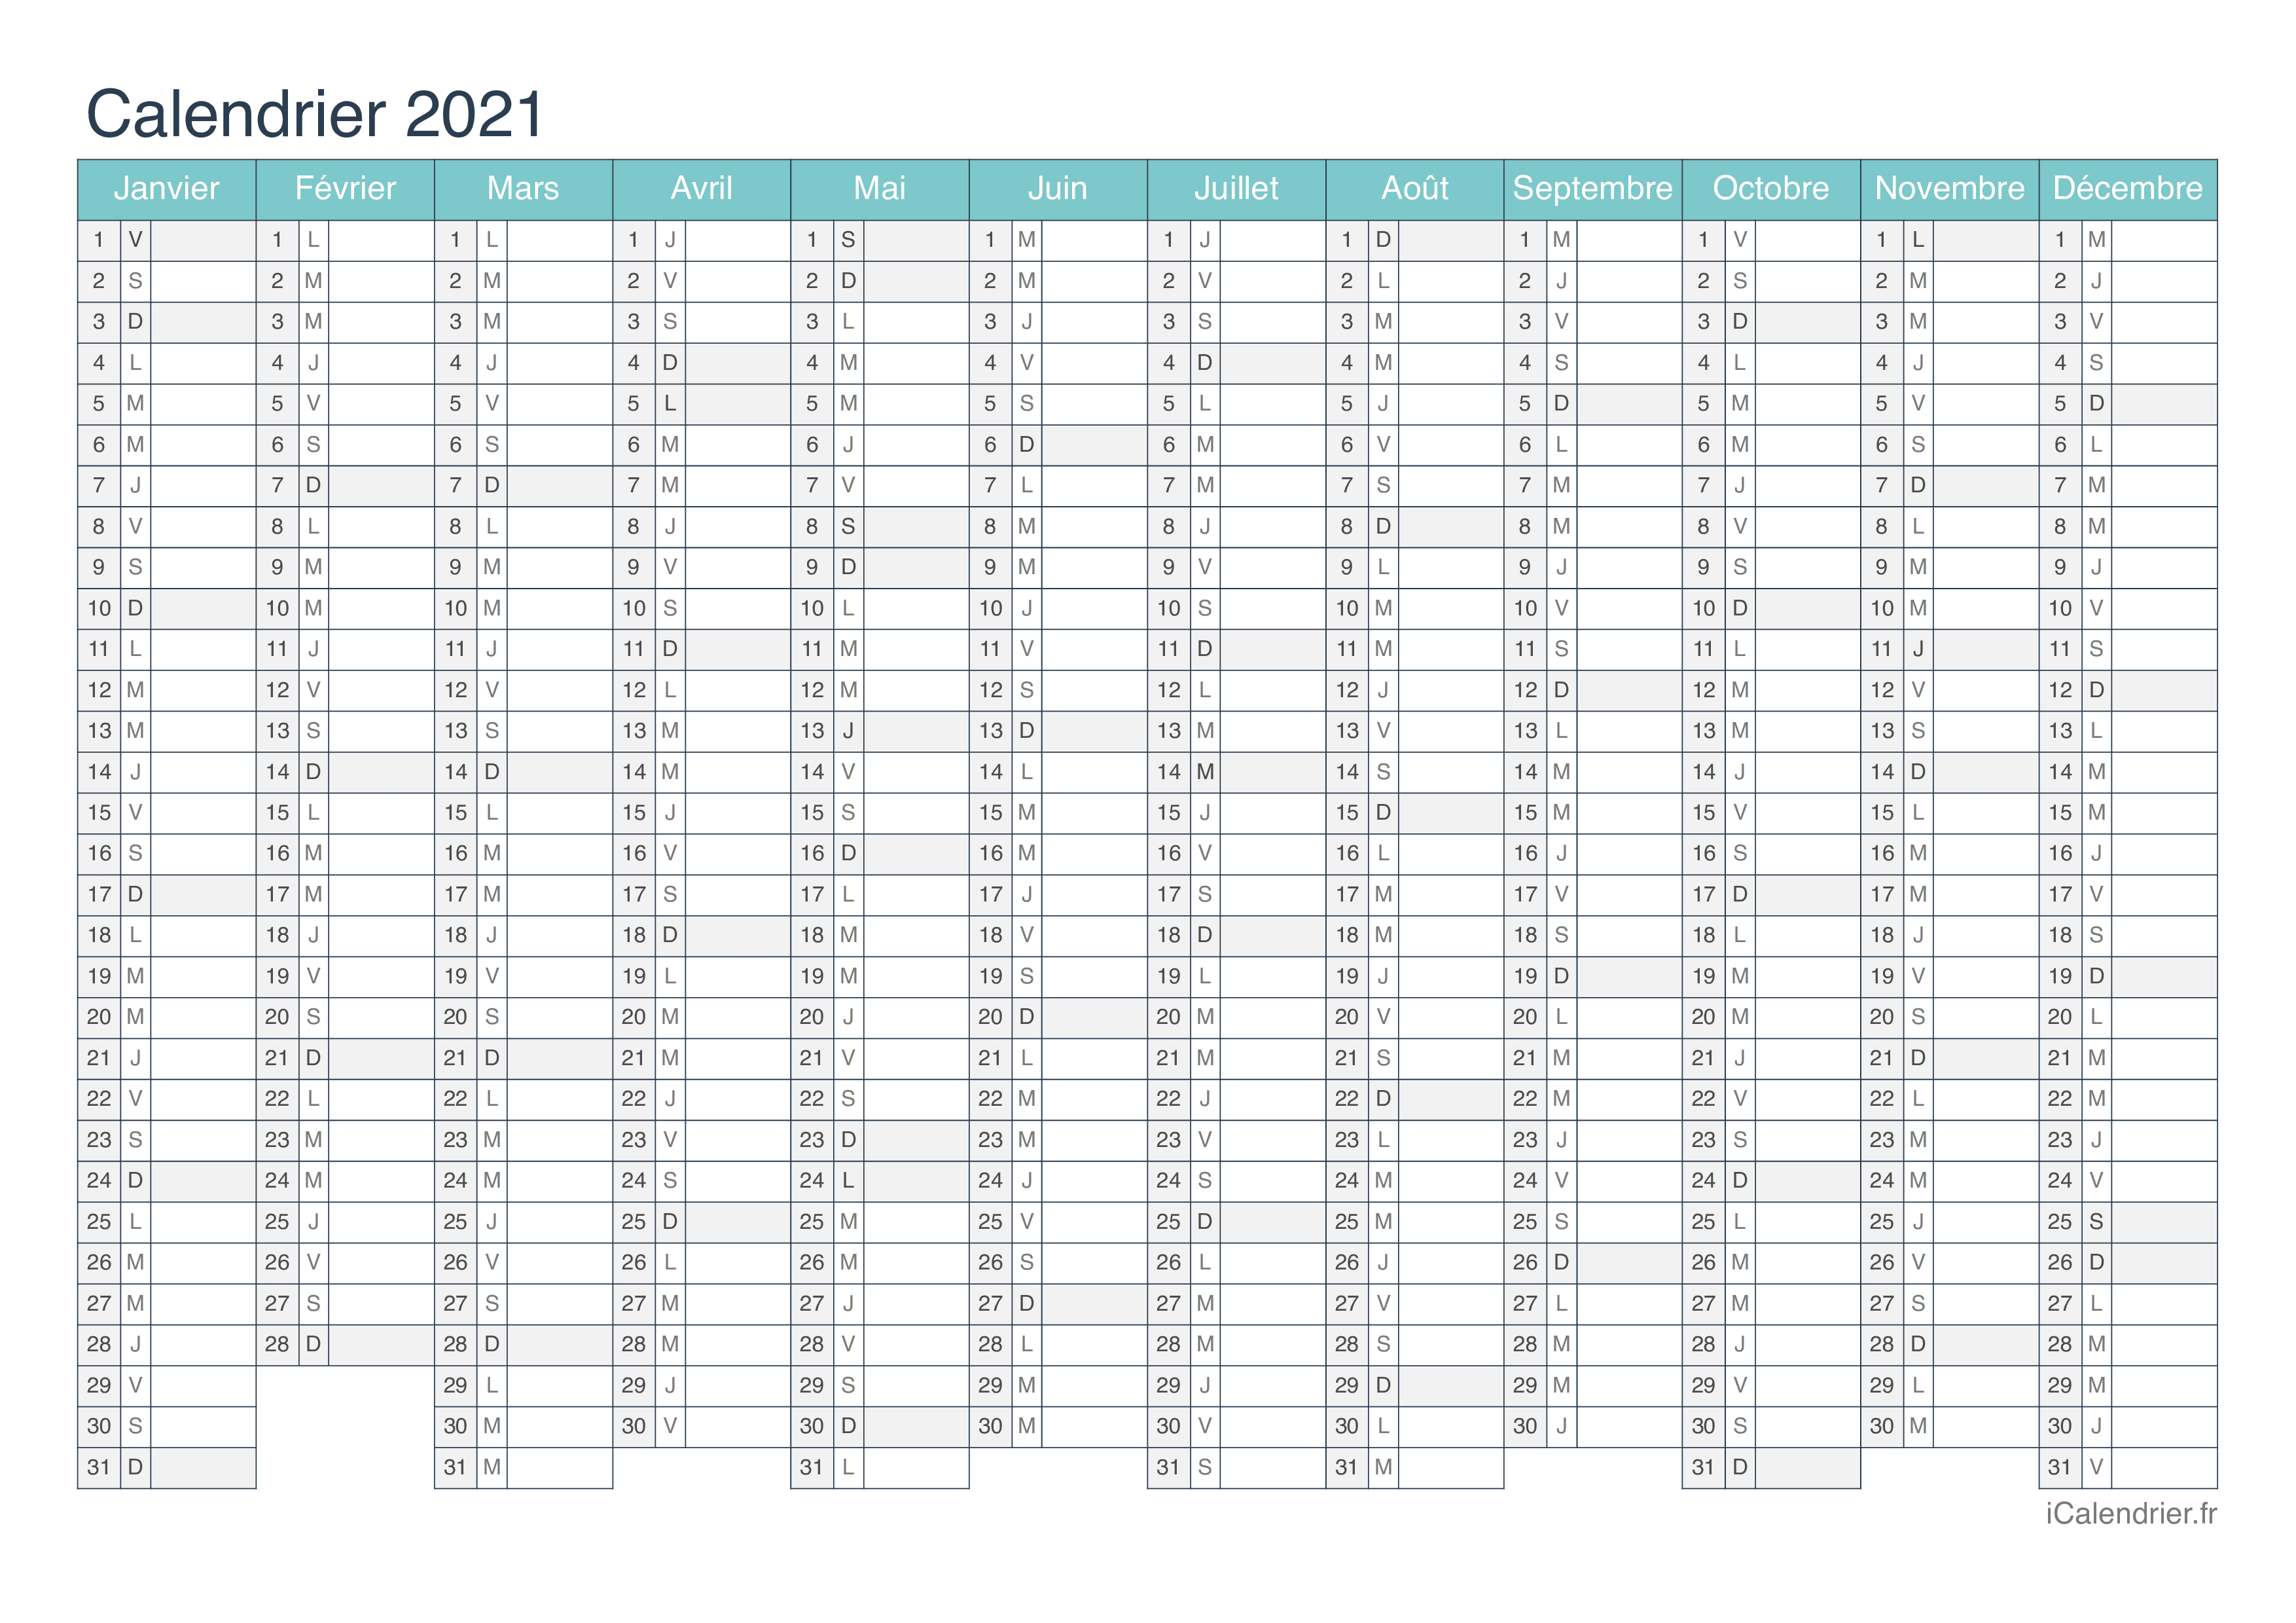 Calendrier 2021 Telecharger Calendrier 2021 à imprimer PDF et Excel   iCalendrier